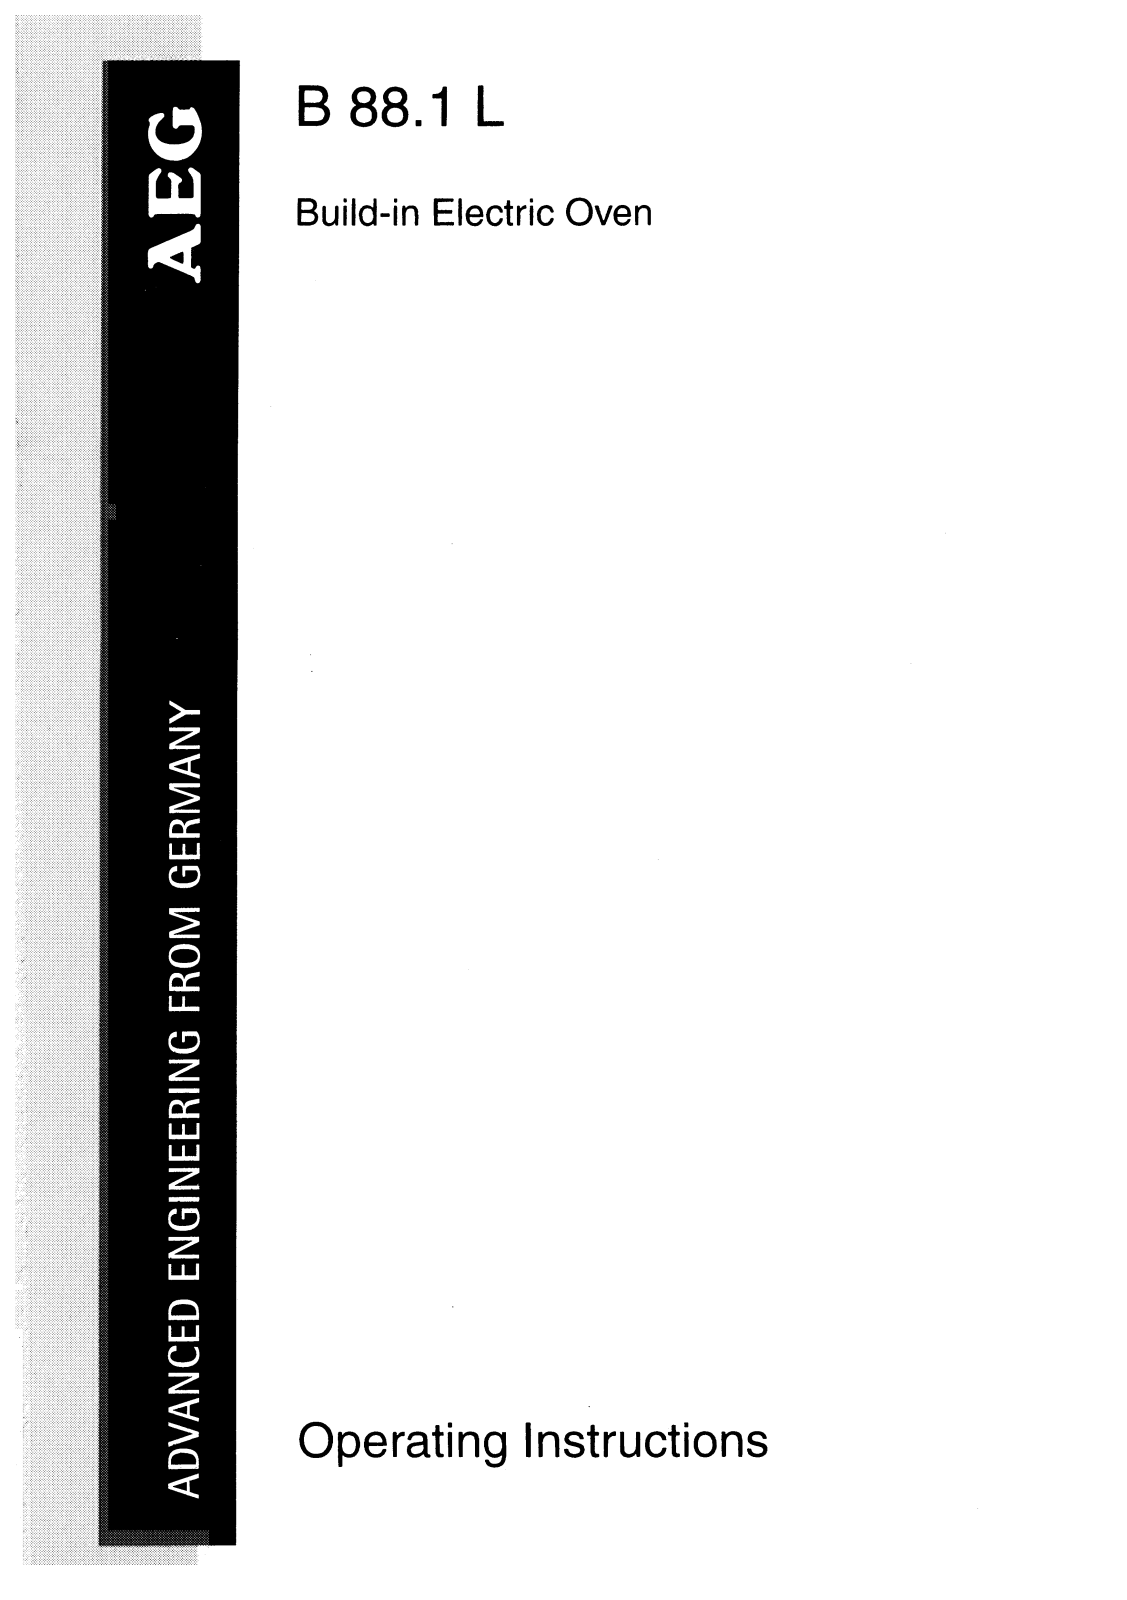 Aeg-electrolux B88.1 L Manual